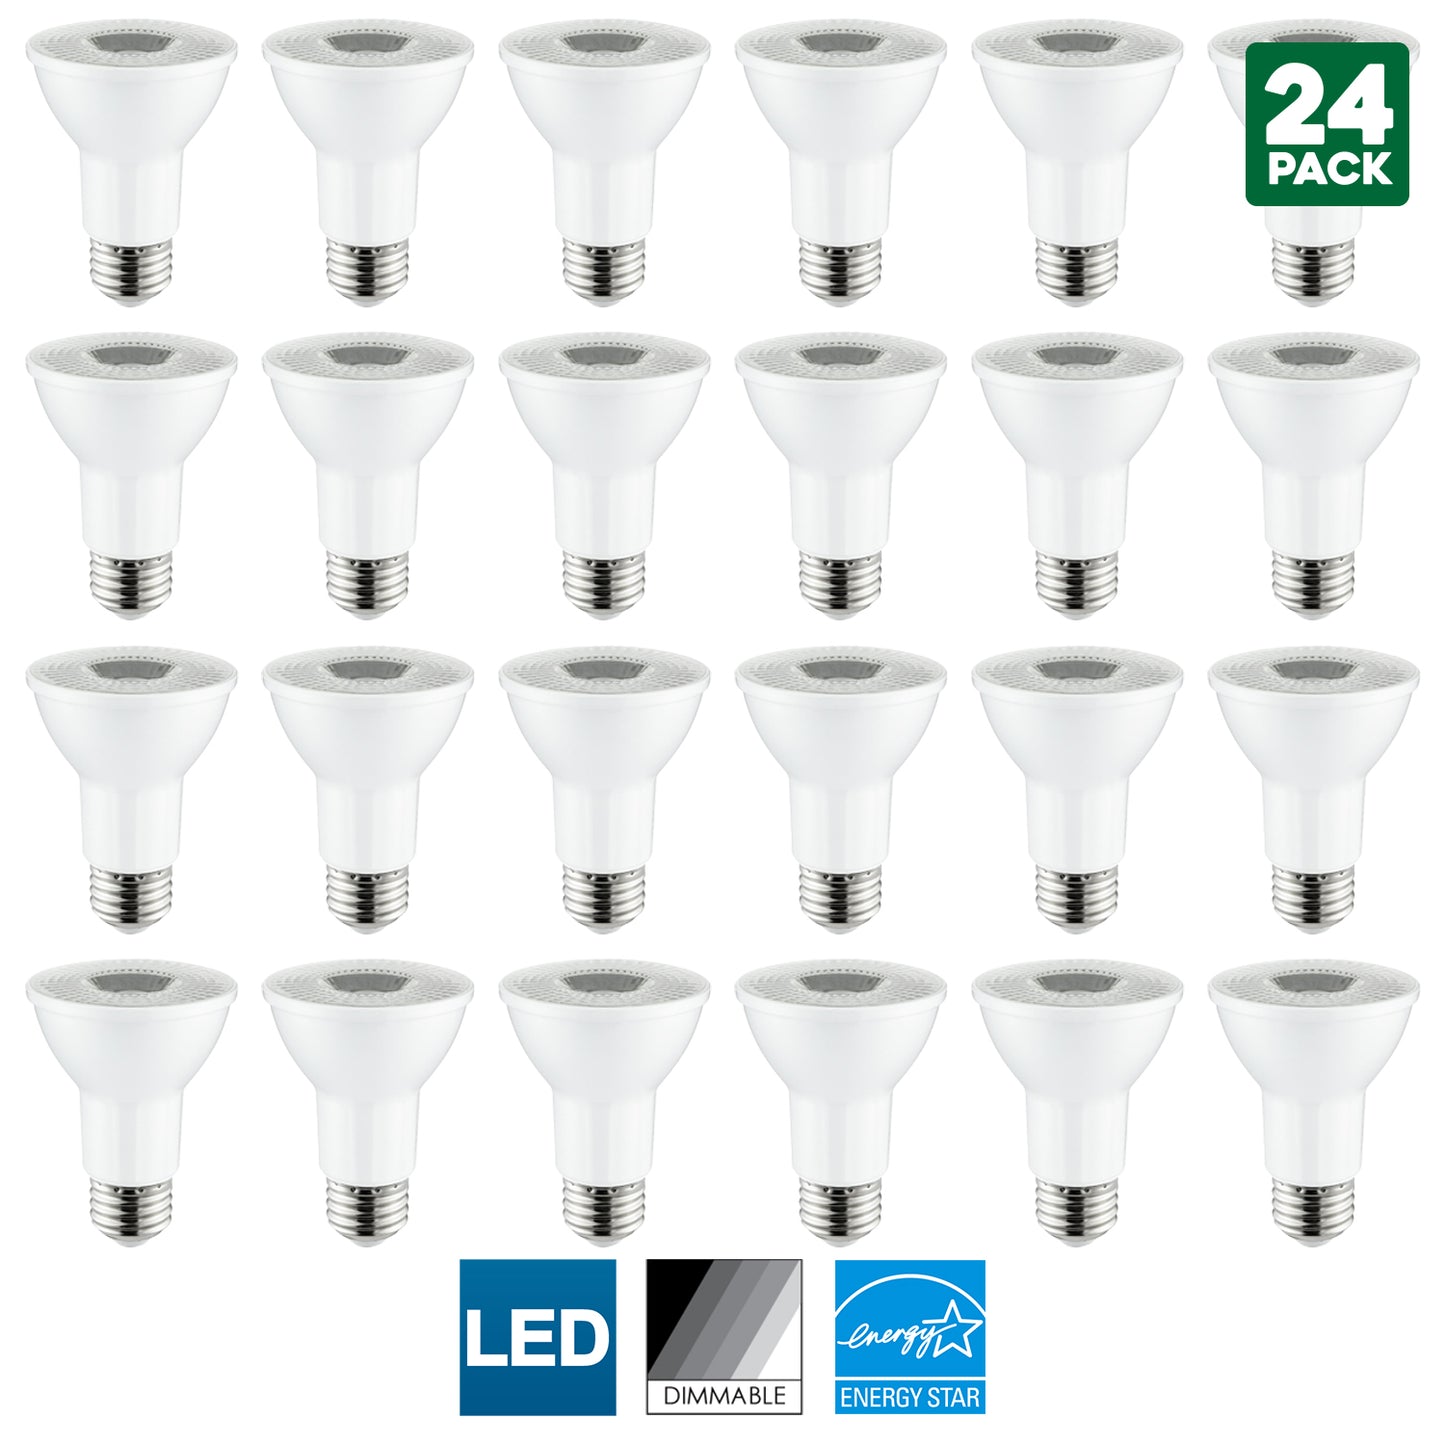 Sunlite LED PAR20 Reflector Bulb, 6 Watt (50 Watt Equivalent), Dimmable, 4000K Cool White, 450 Lumens, Medium (E26) Base, Energy Star Certified